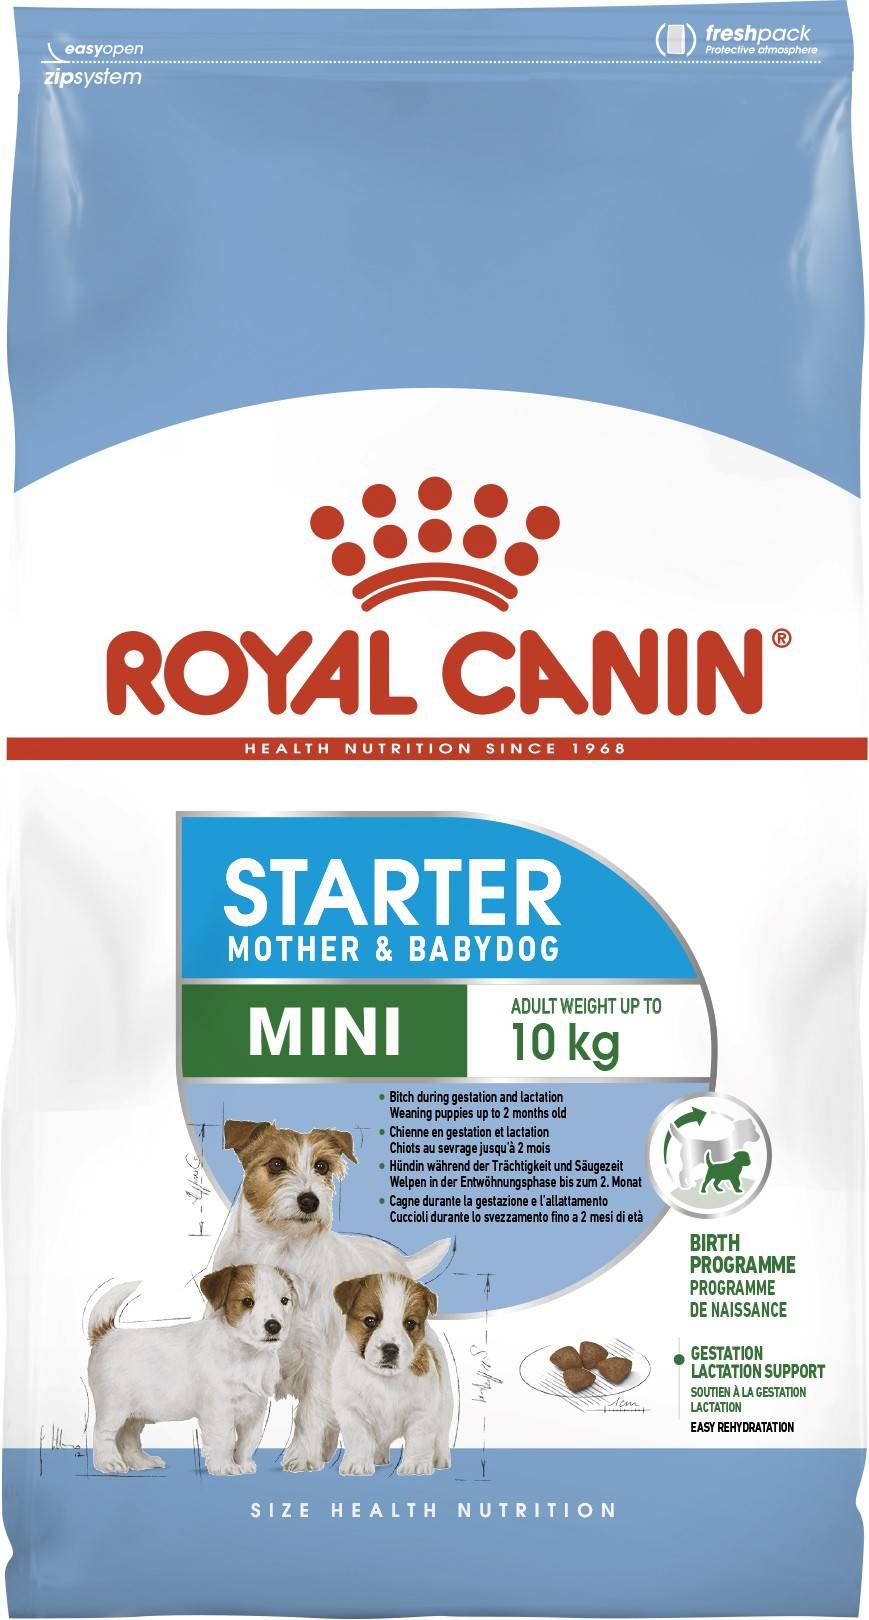 ROYAL CANIN MINI STARTER MOTHER & BABYDOG – сухой корм для щенков малых пород и сук в последней период беременности